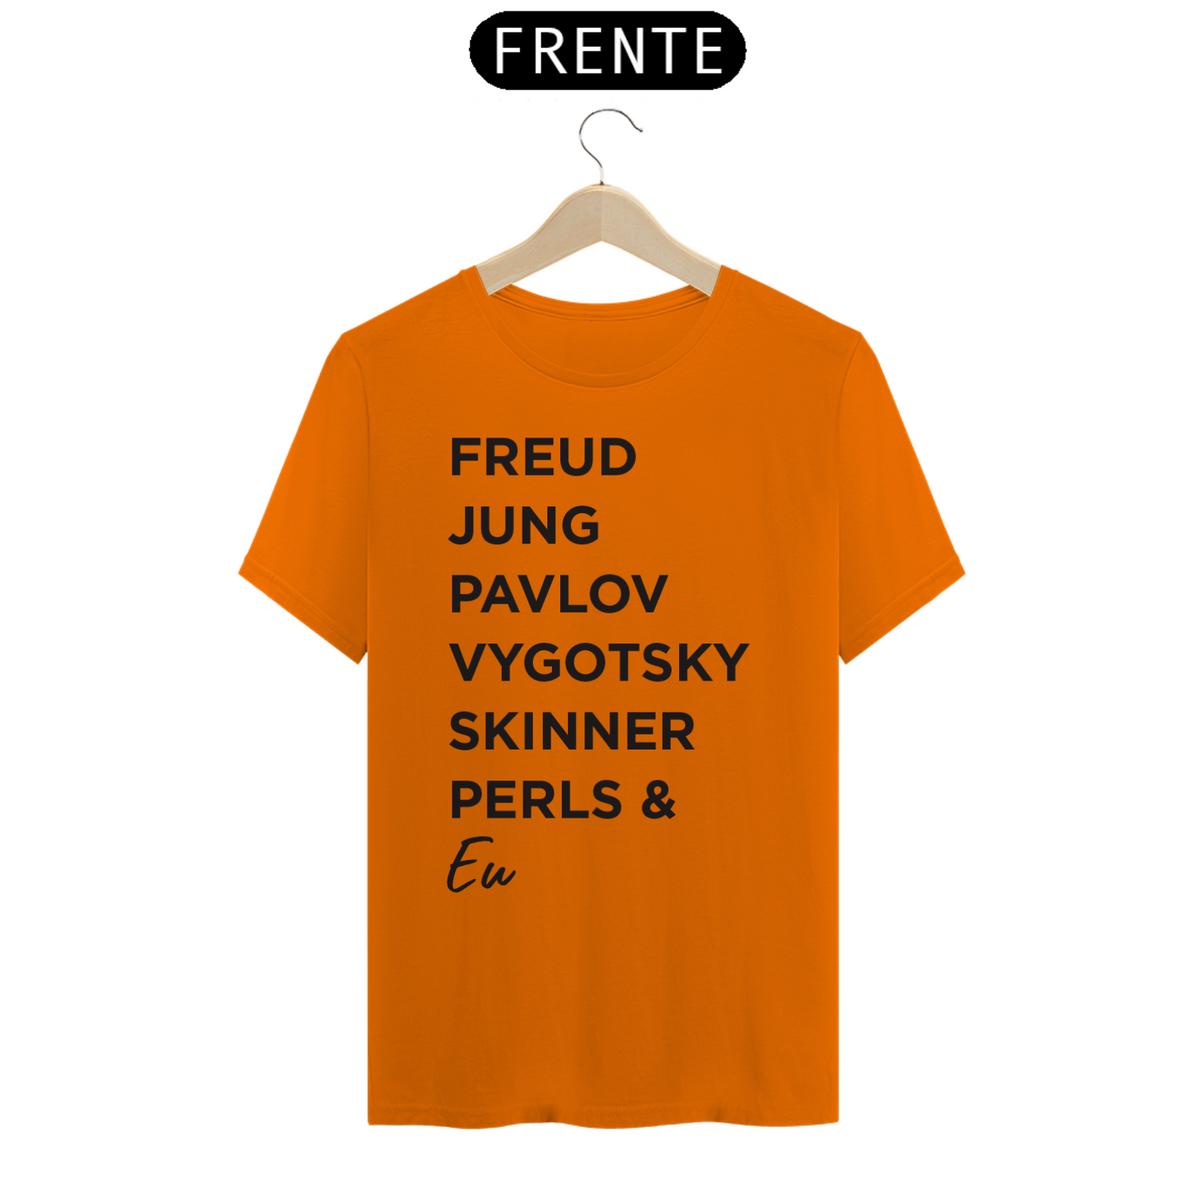 Nome do produto: Freud, Jung, Pavlov, Vygotsky, Skinner, Perls & Eu (cores claras)